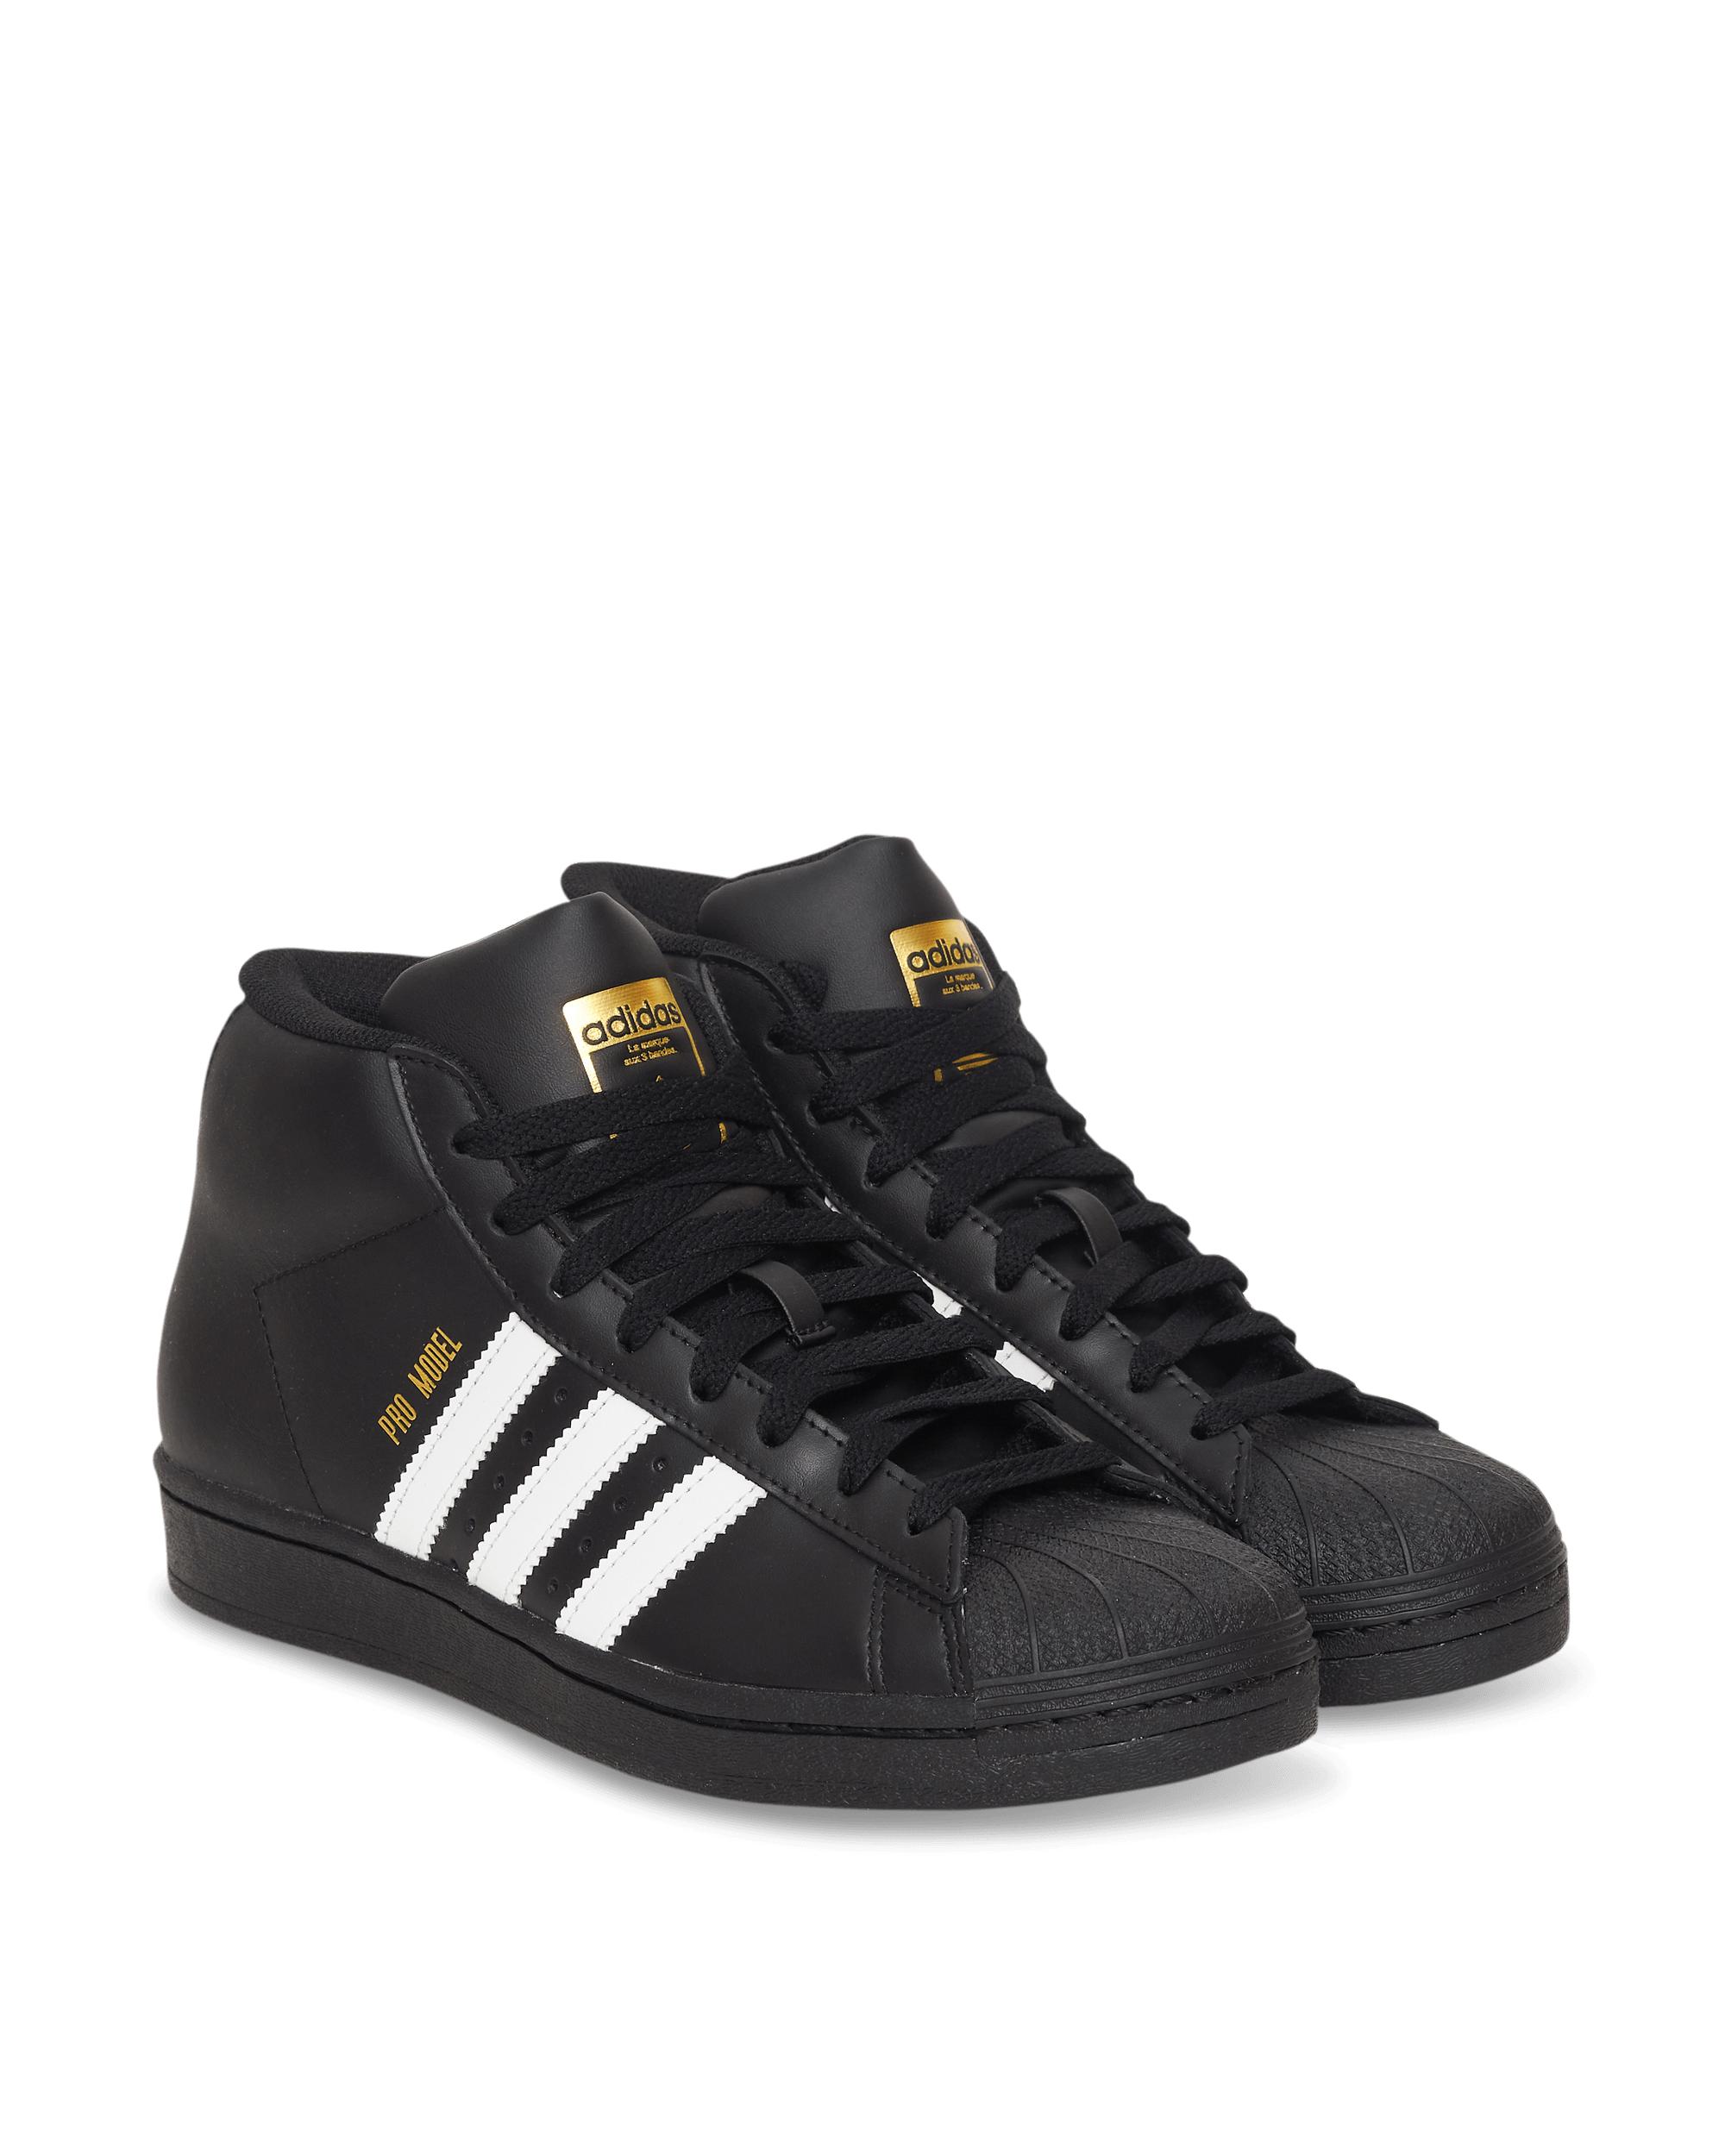 adidas Originals Pro Model - Shoes in Black/Black/Black (Black) for Men -  Save 50% | Lyst